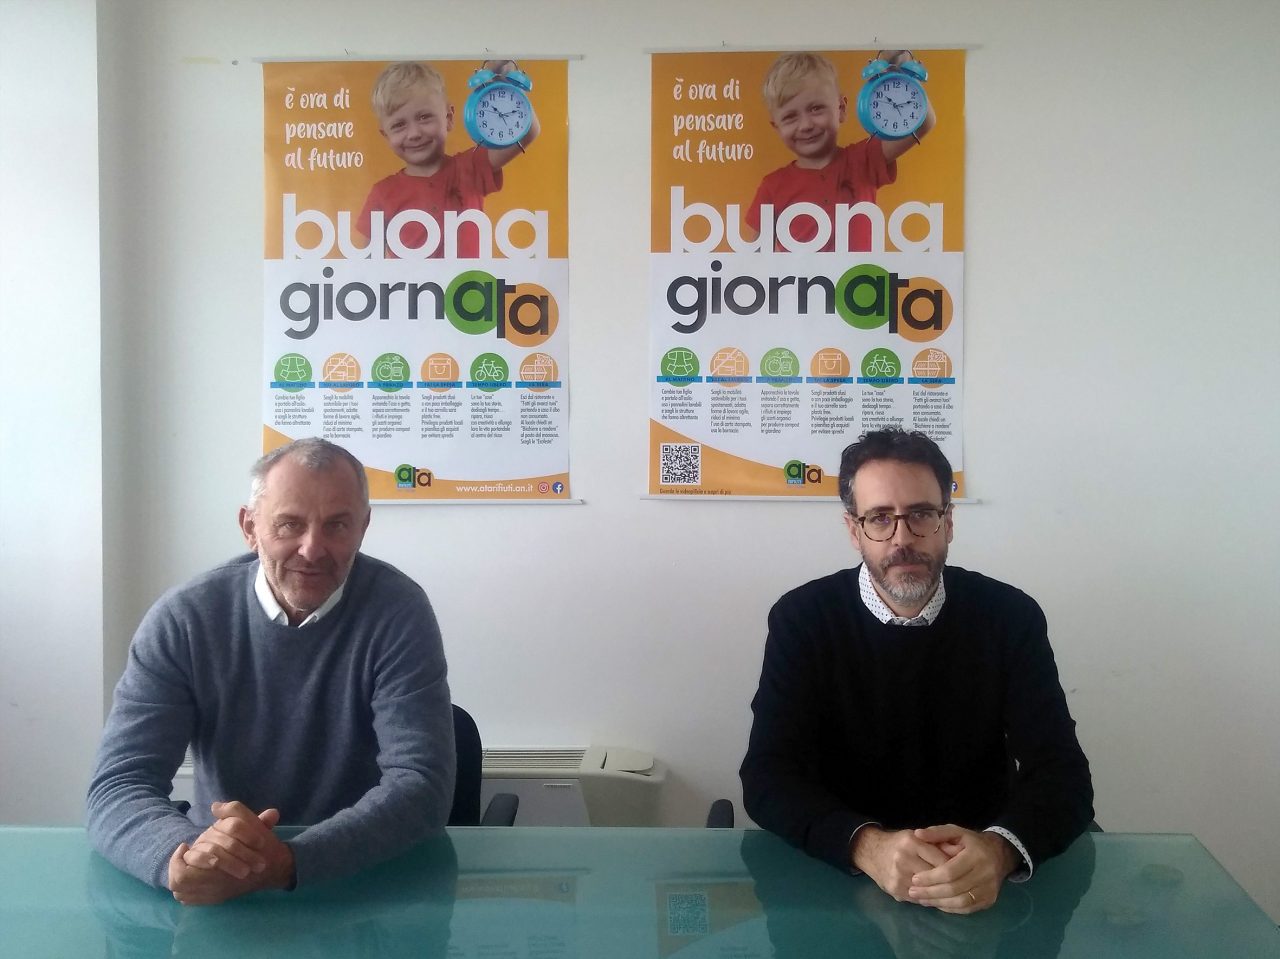 Buona giornATA, campagna di comunicazione promossa da Massimiliano Cenerini Matteo Giantomass